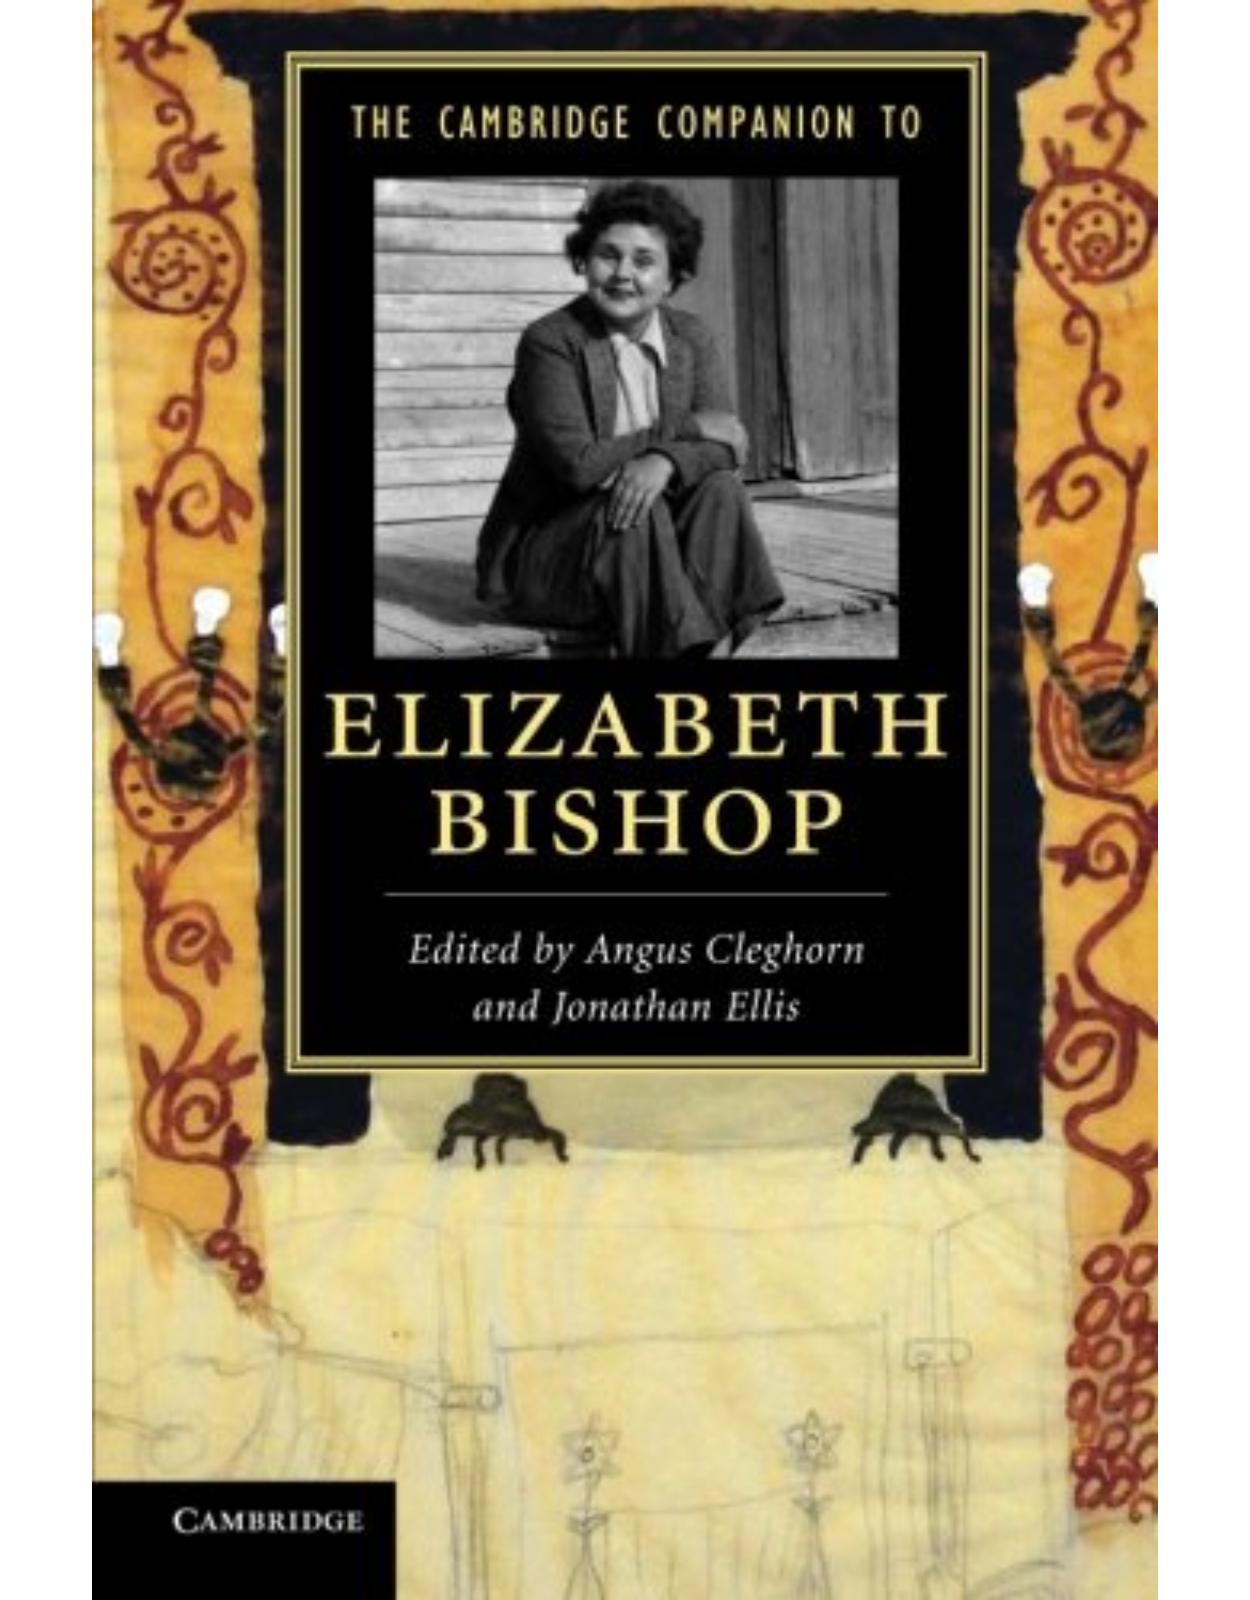 The Cambridge Companion to Elizabeth Bishop (Cambridge Companions to Literature)